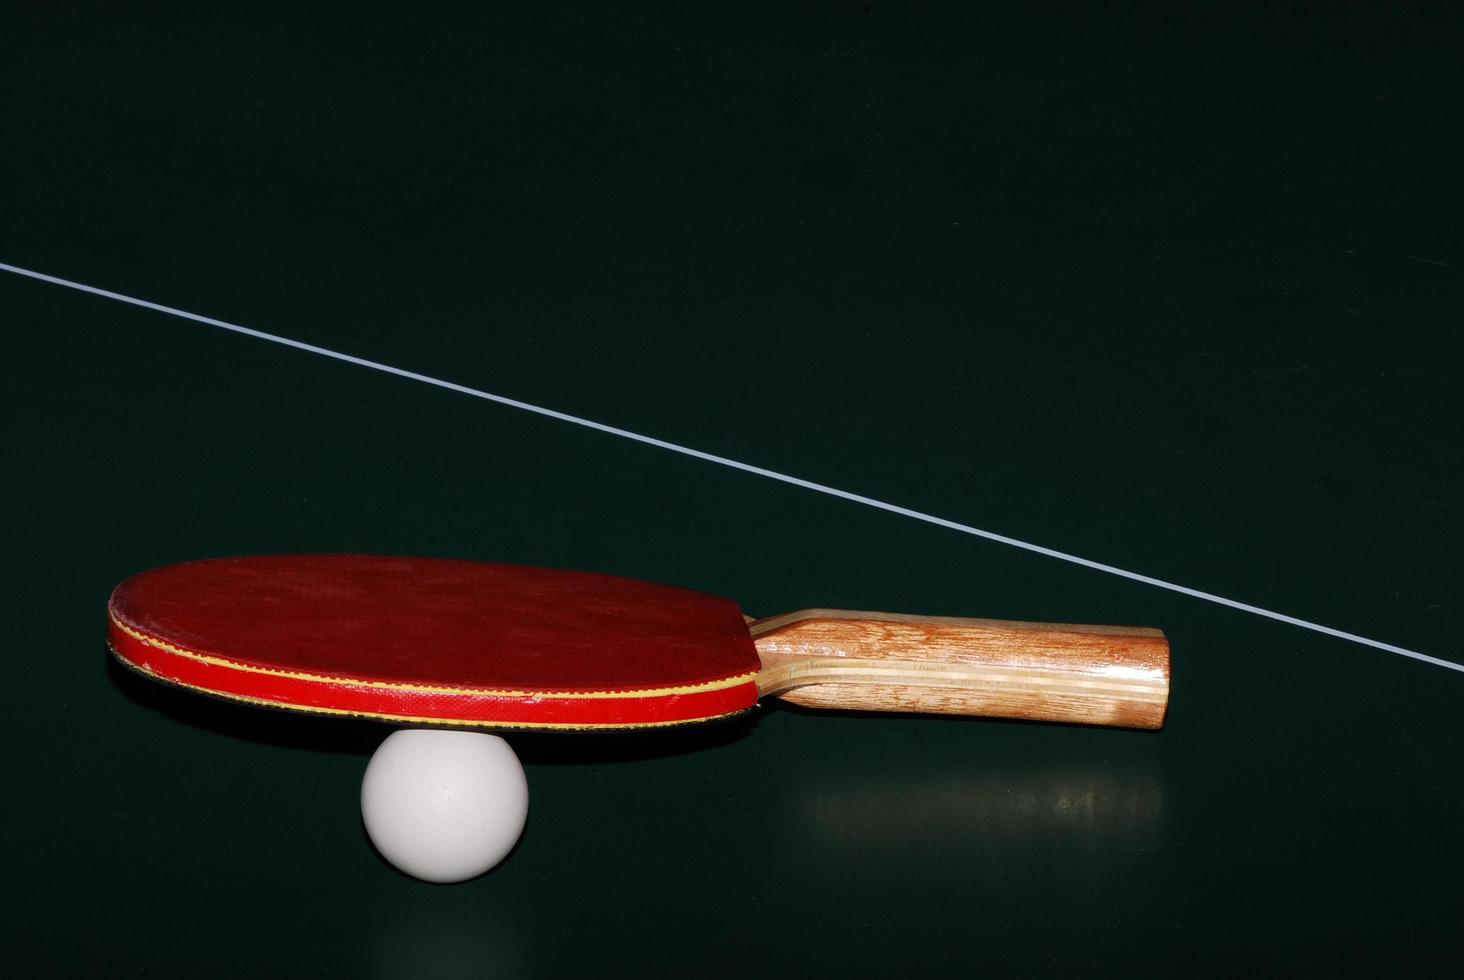 Pelota de raqueta de tenis de mesa y red en primer plano de la mesa de tenis de mesa foto